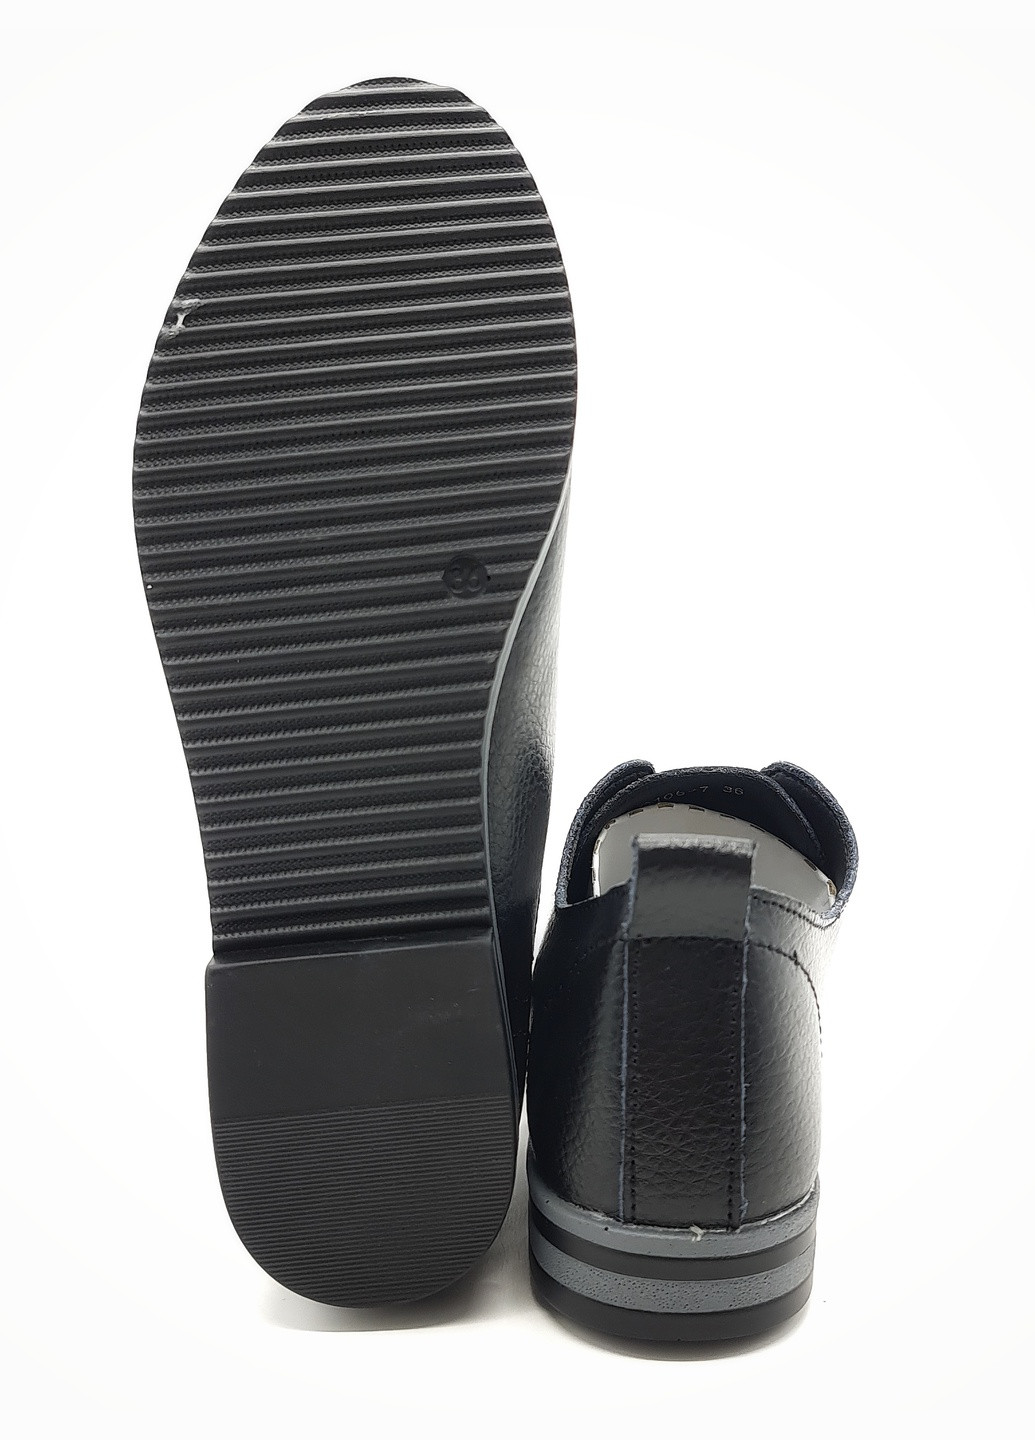 Жіночі туфлі чорні шкіряні KD-14-1 235 мм (р) Kadisailun (259299494)